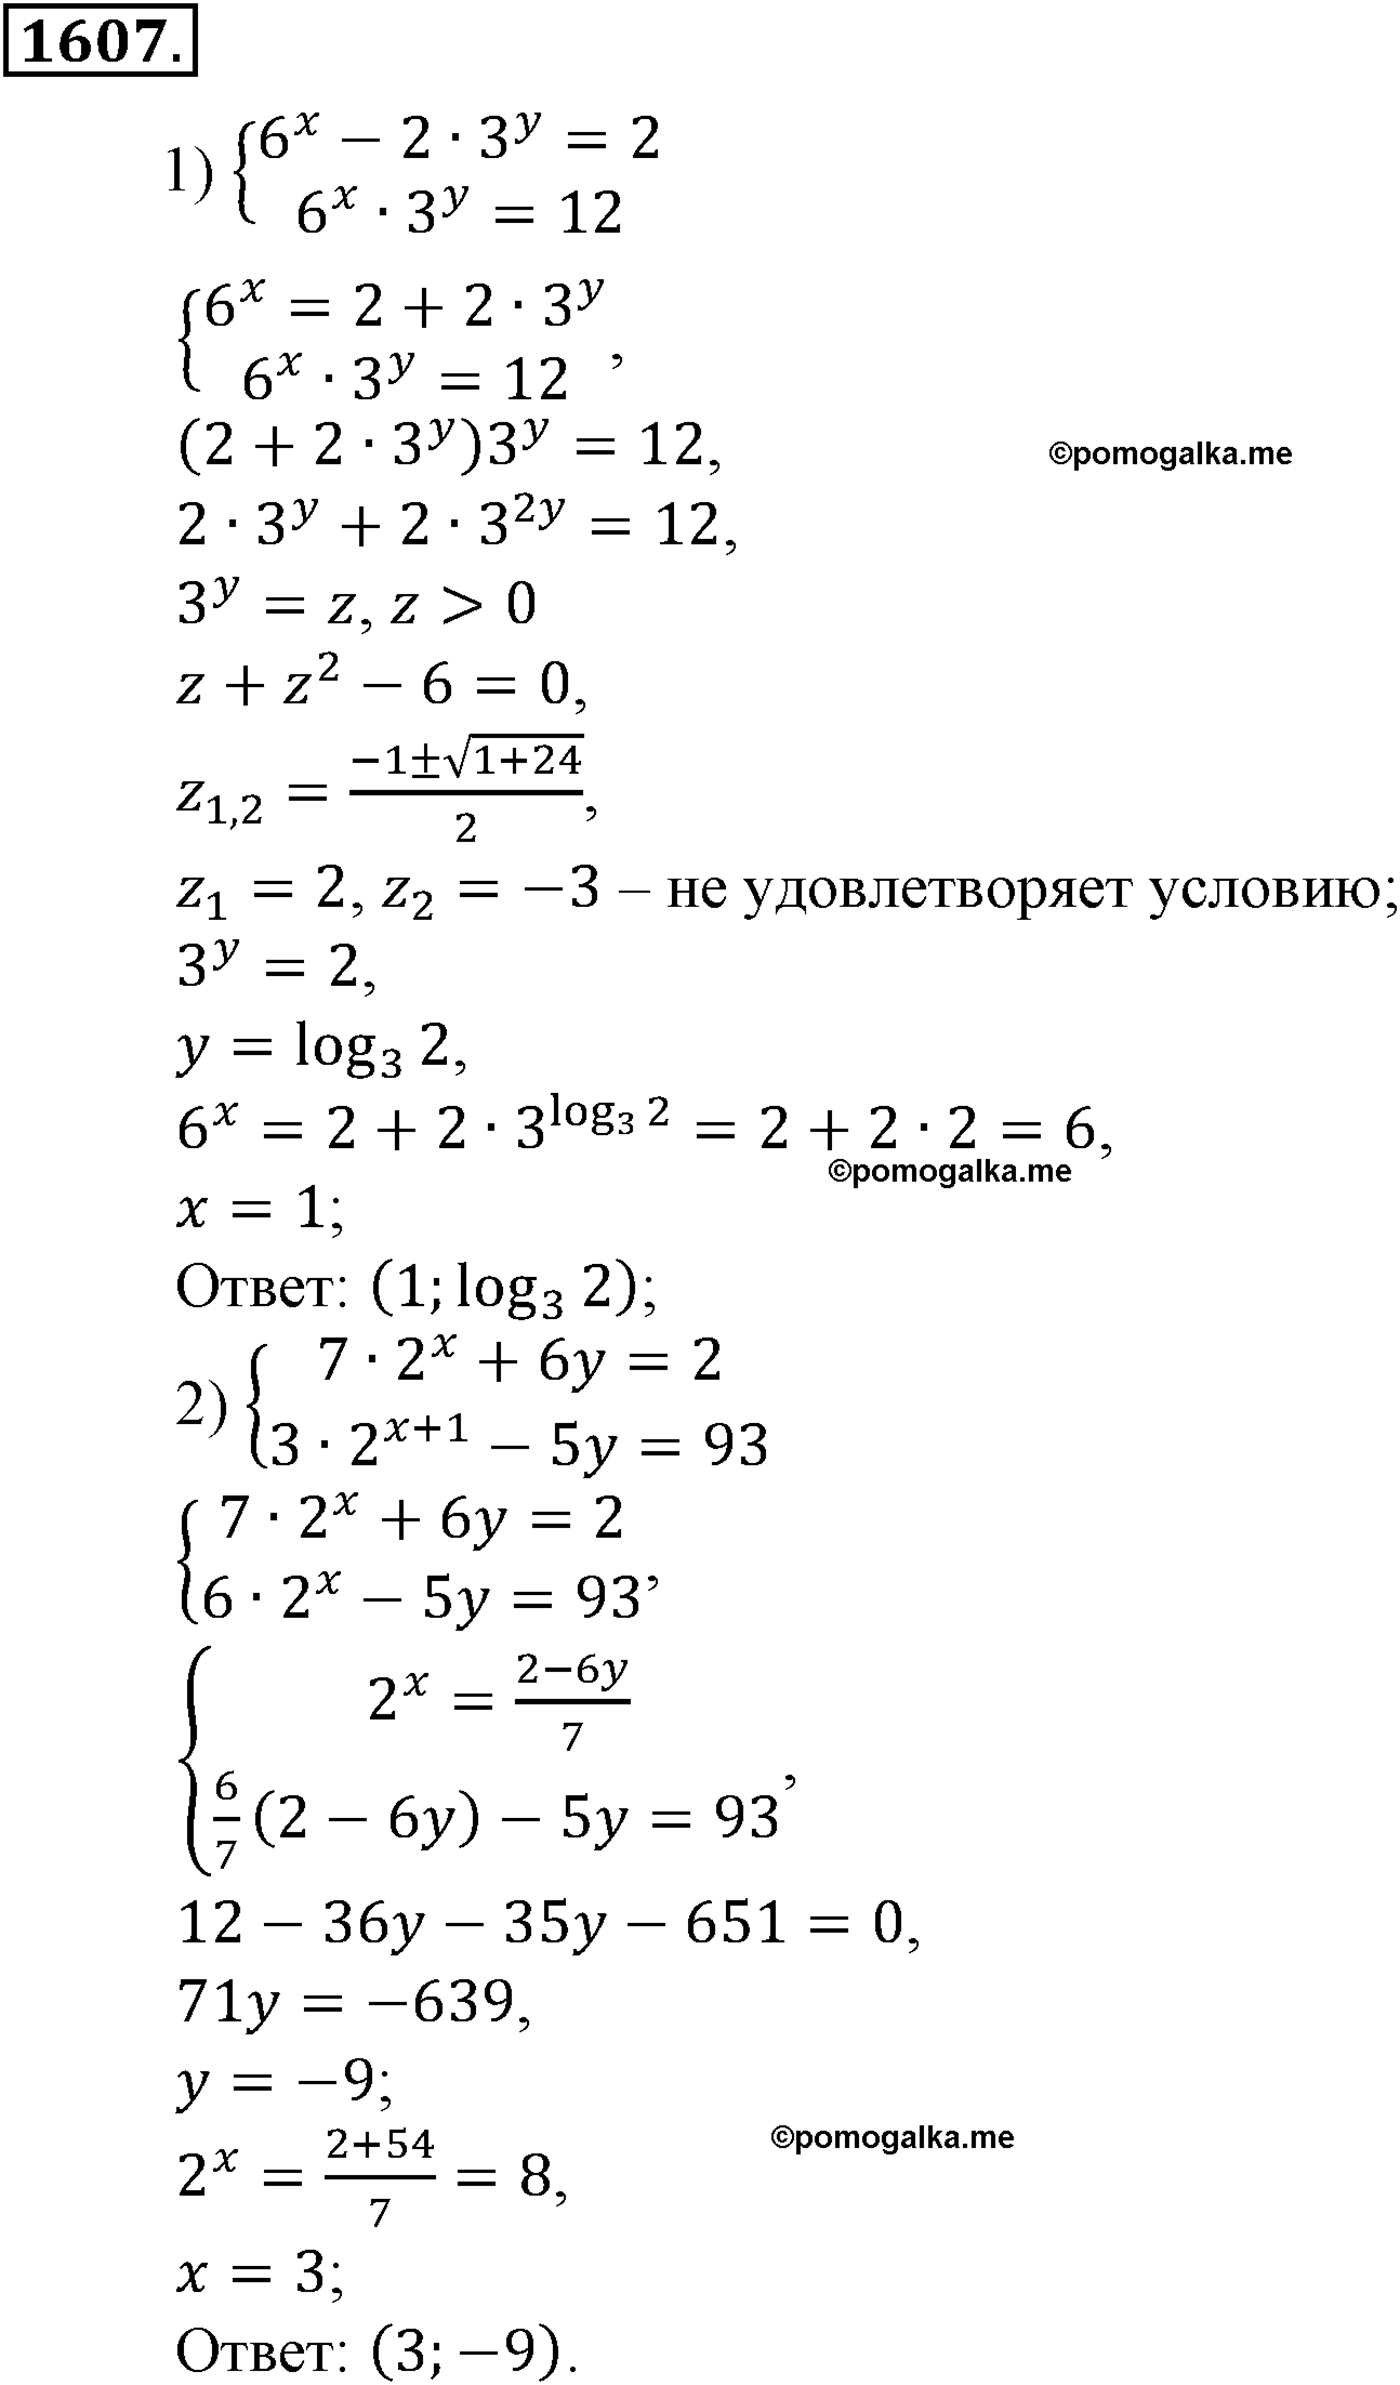 разбор задачи №1607 по алгебре за 10-11 класс из учебника Алимова, Колягина